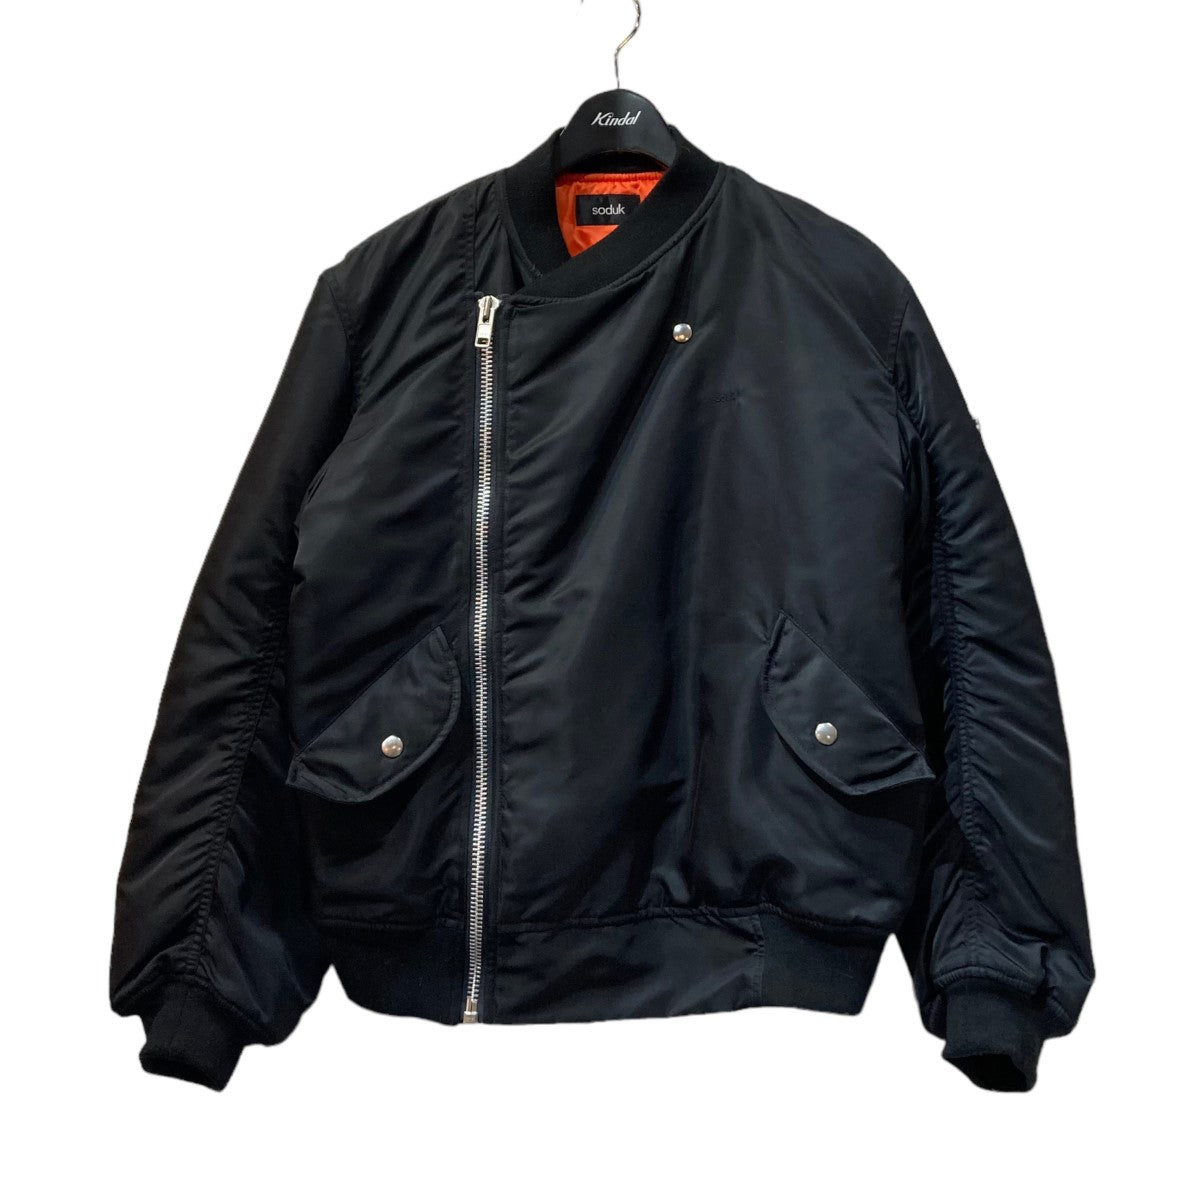 soduk(スドーク) MA-1 jacket ジャケットブルゾン 0419030102